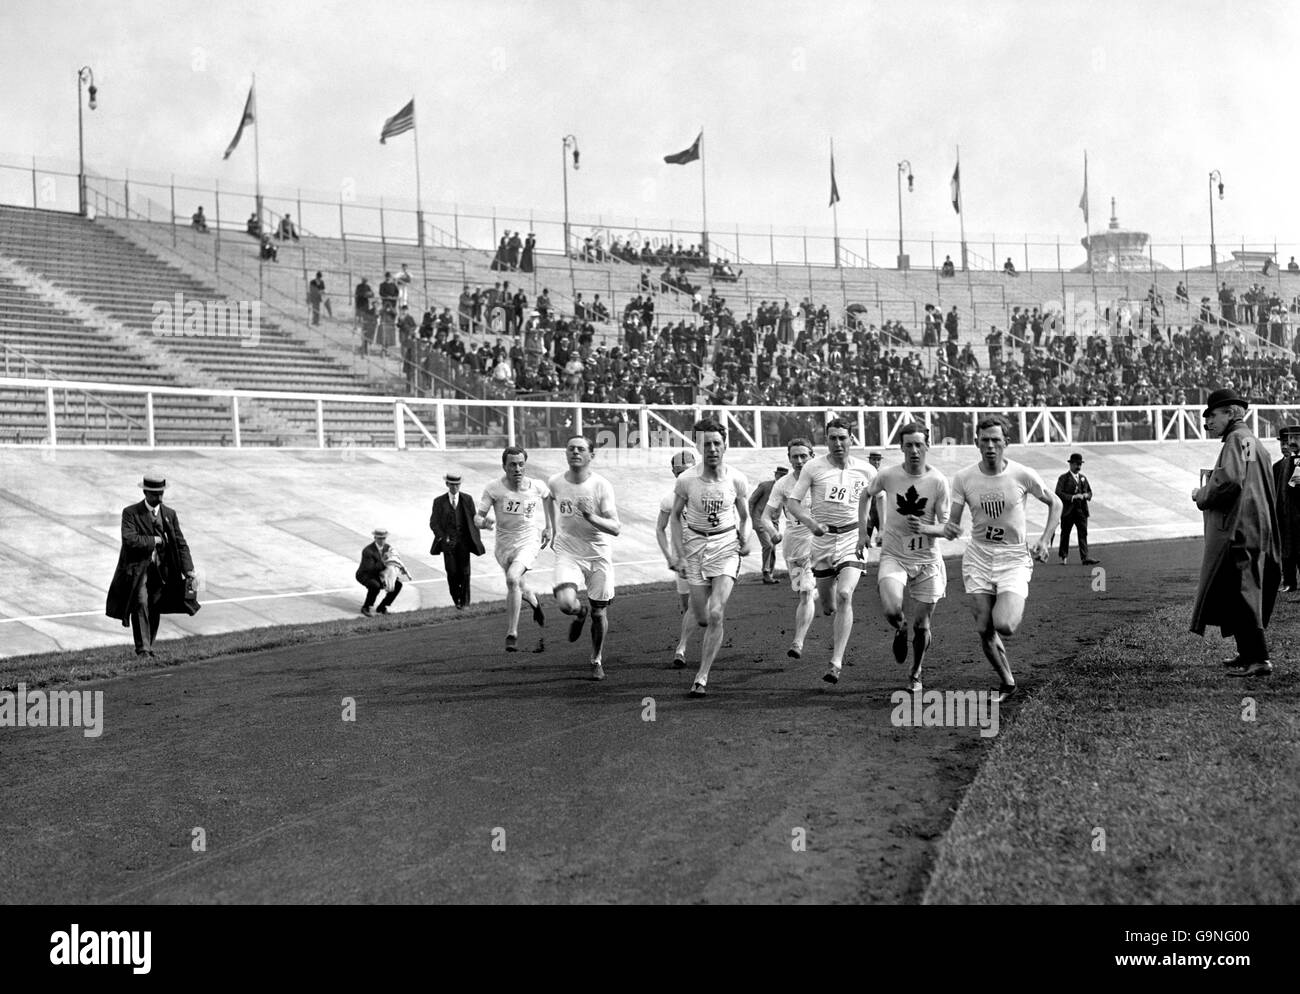 Atletismo - Juegos Olímpicos de Londres 1908 - 1500m - Final - CIUDAD BLANCA Foto de stock